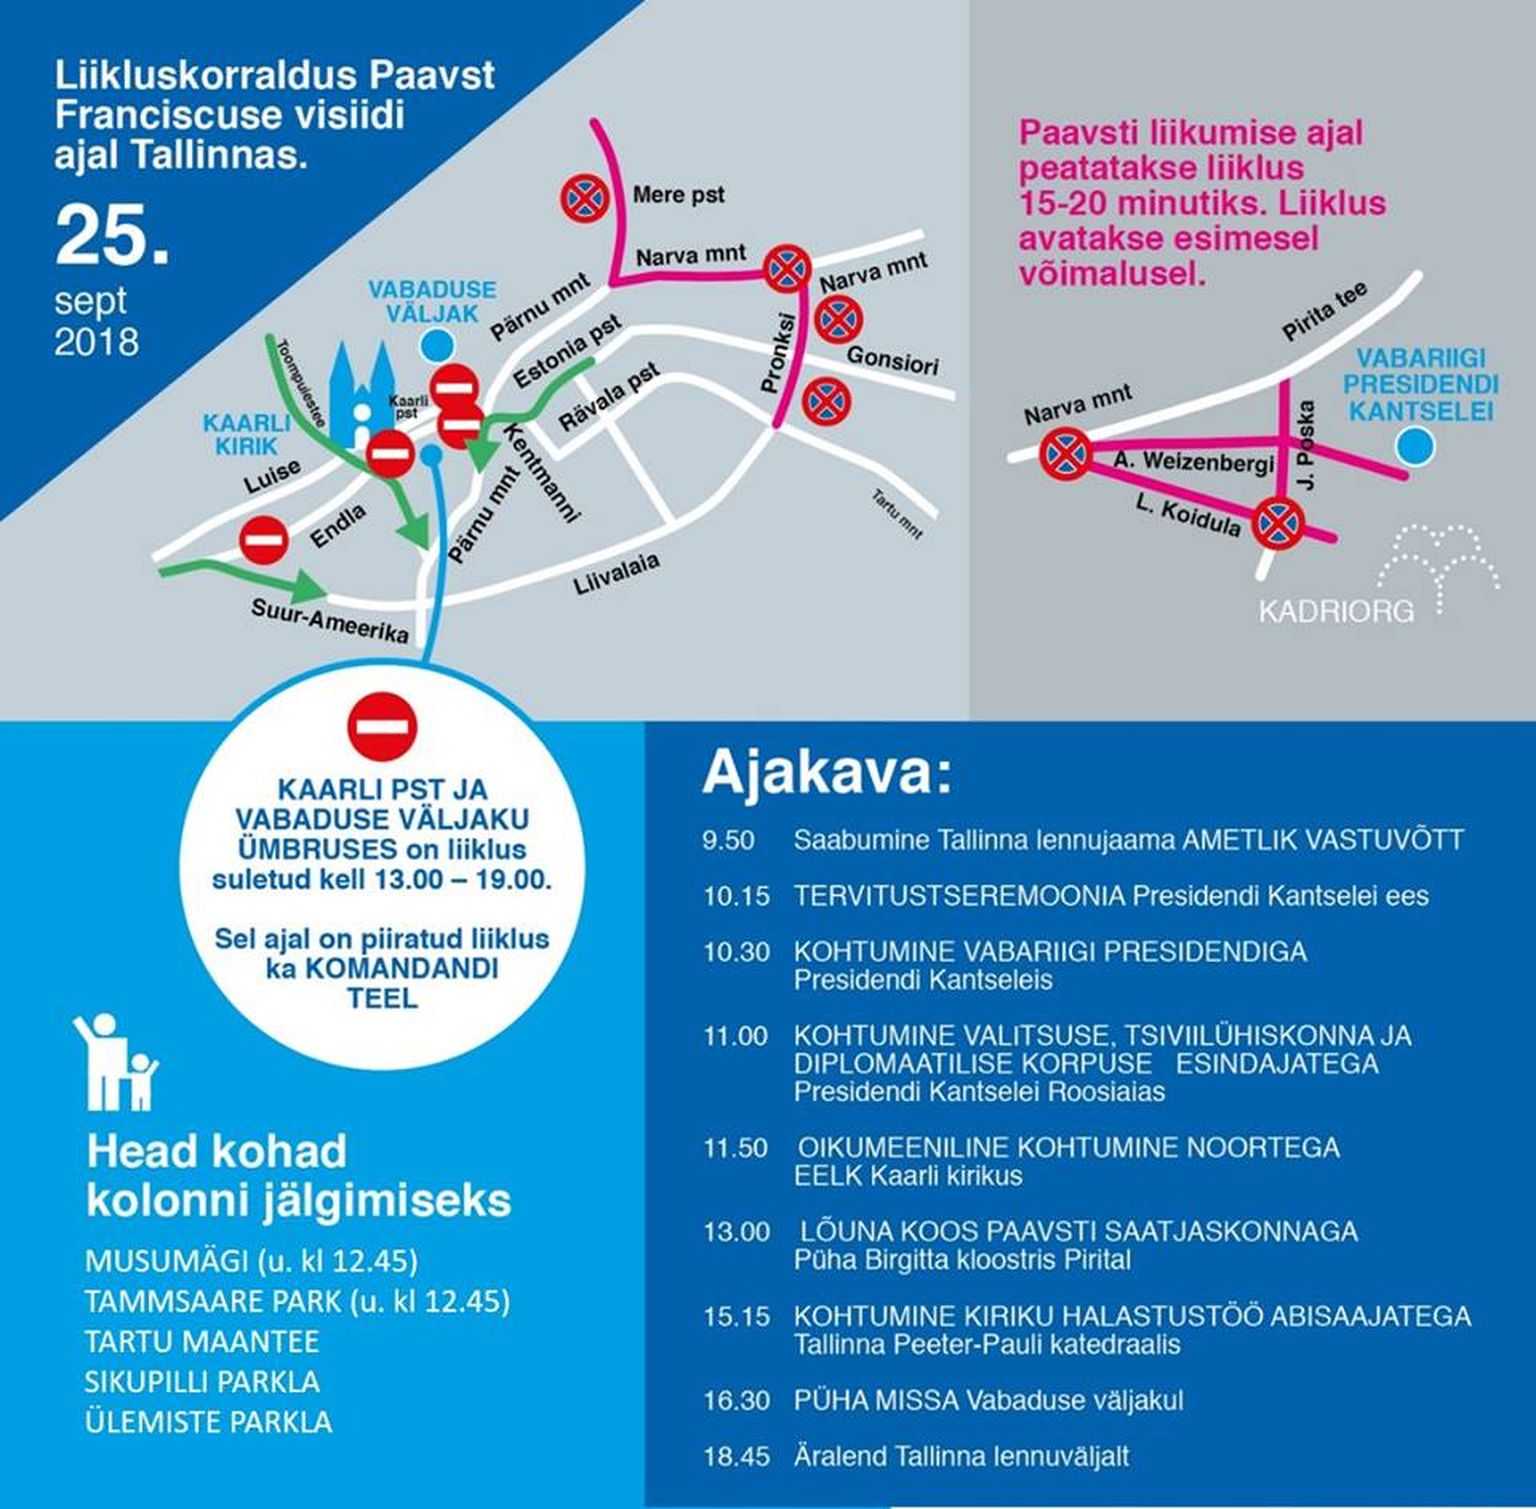 Движение в центре Таллинна будет ограничено.